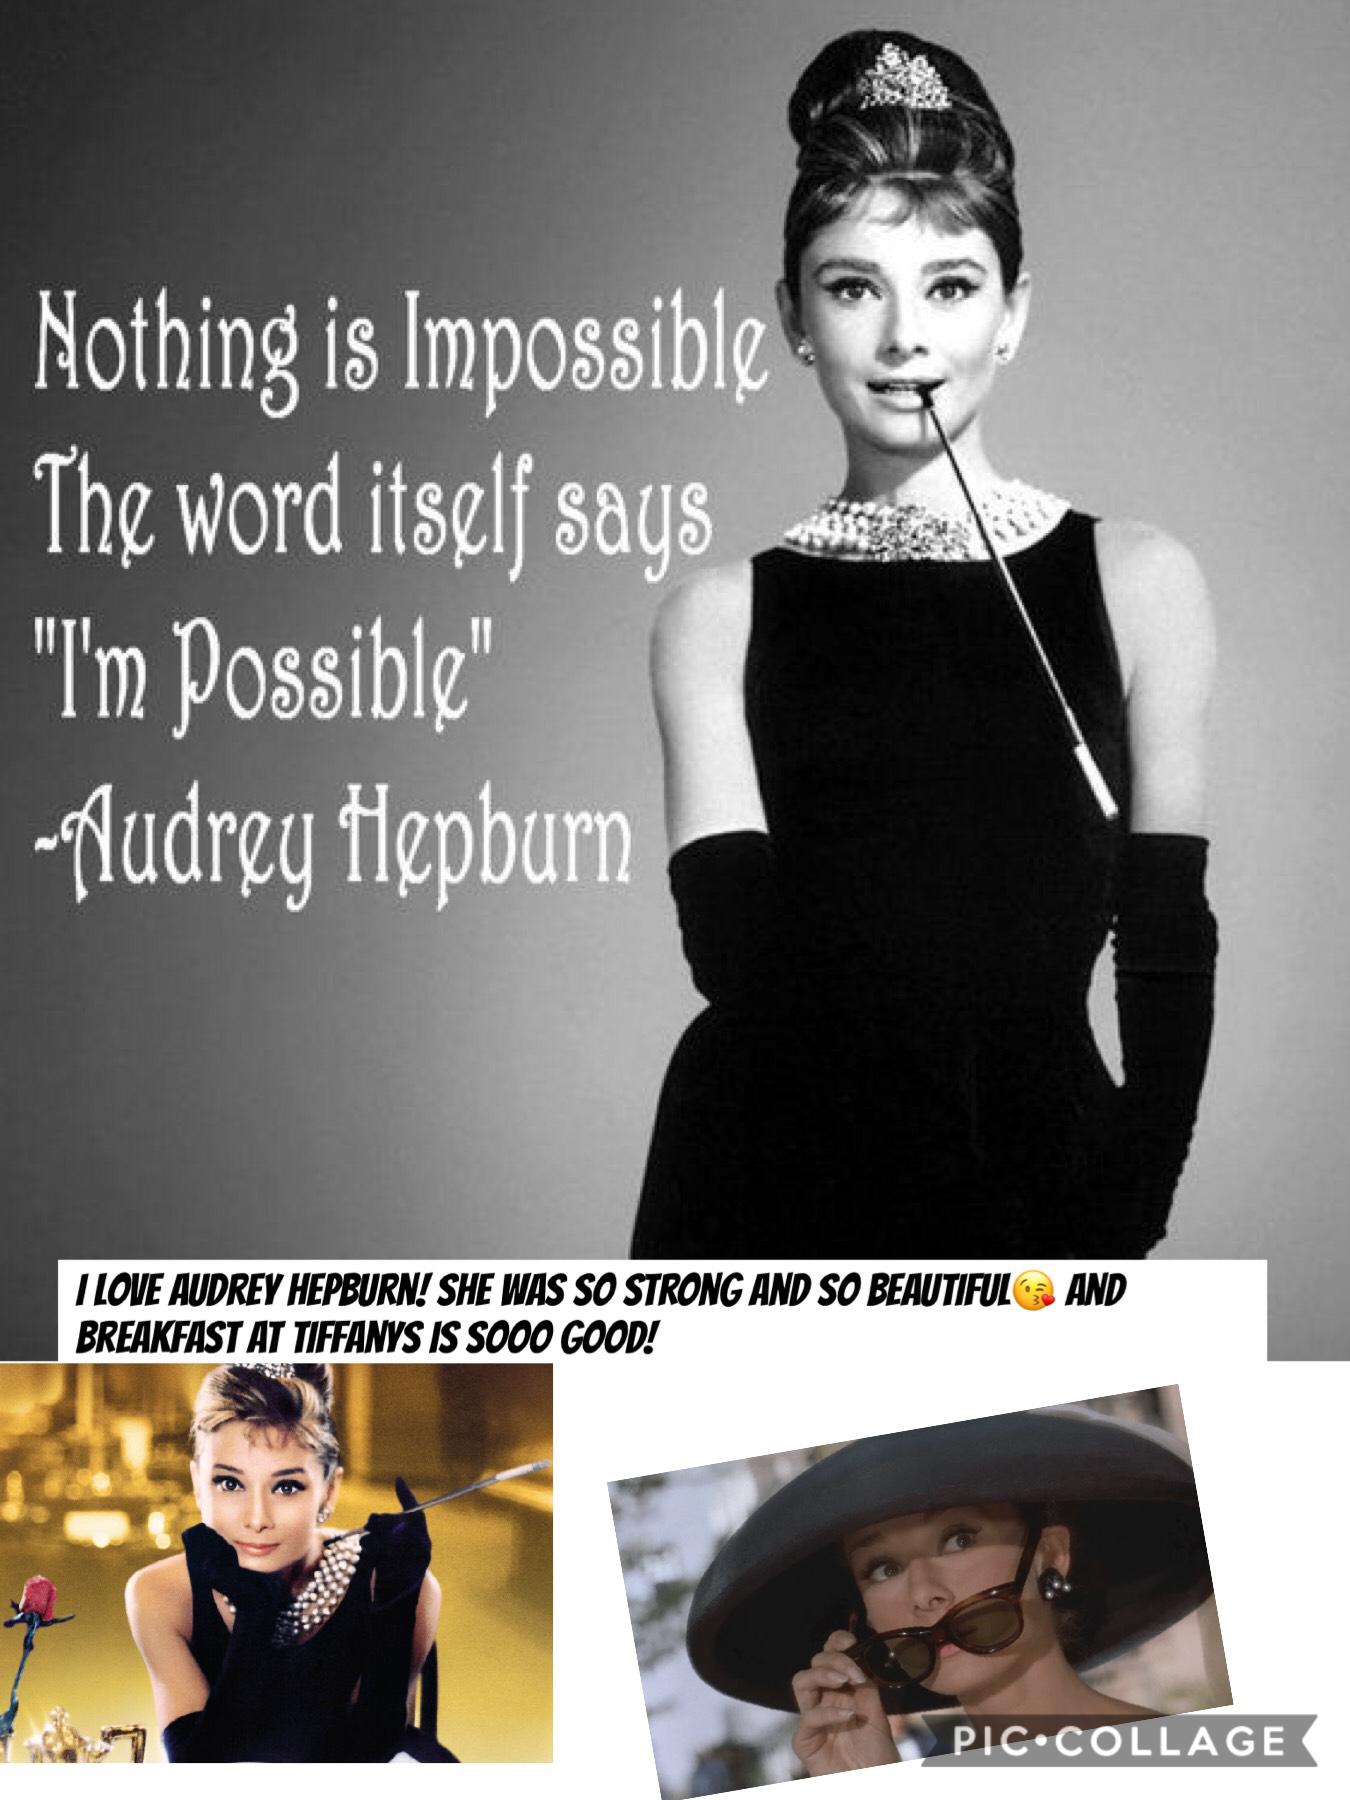 Love you Audrey Hepburn!